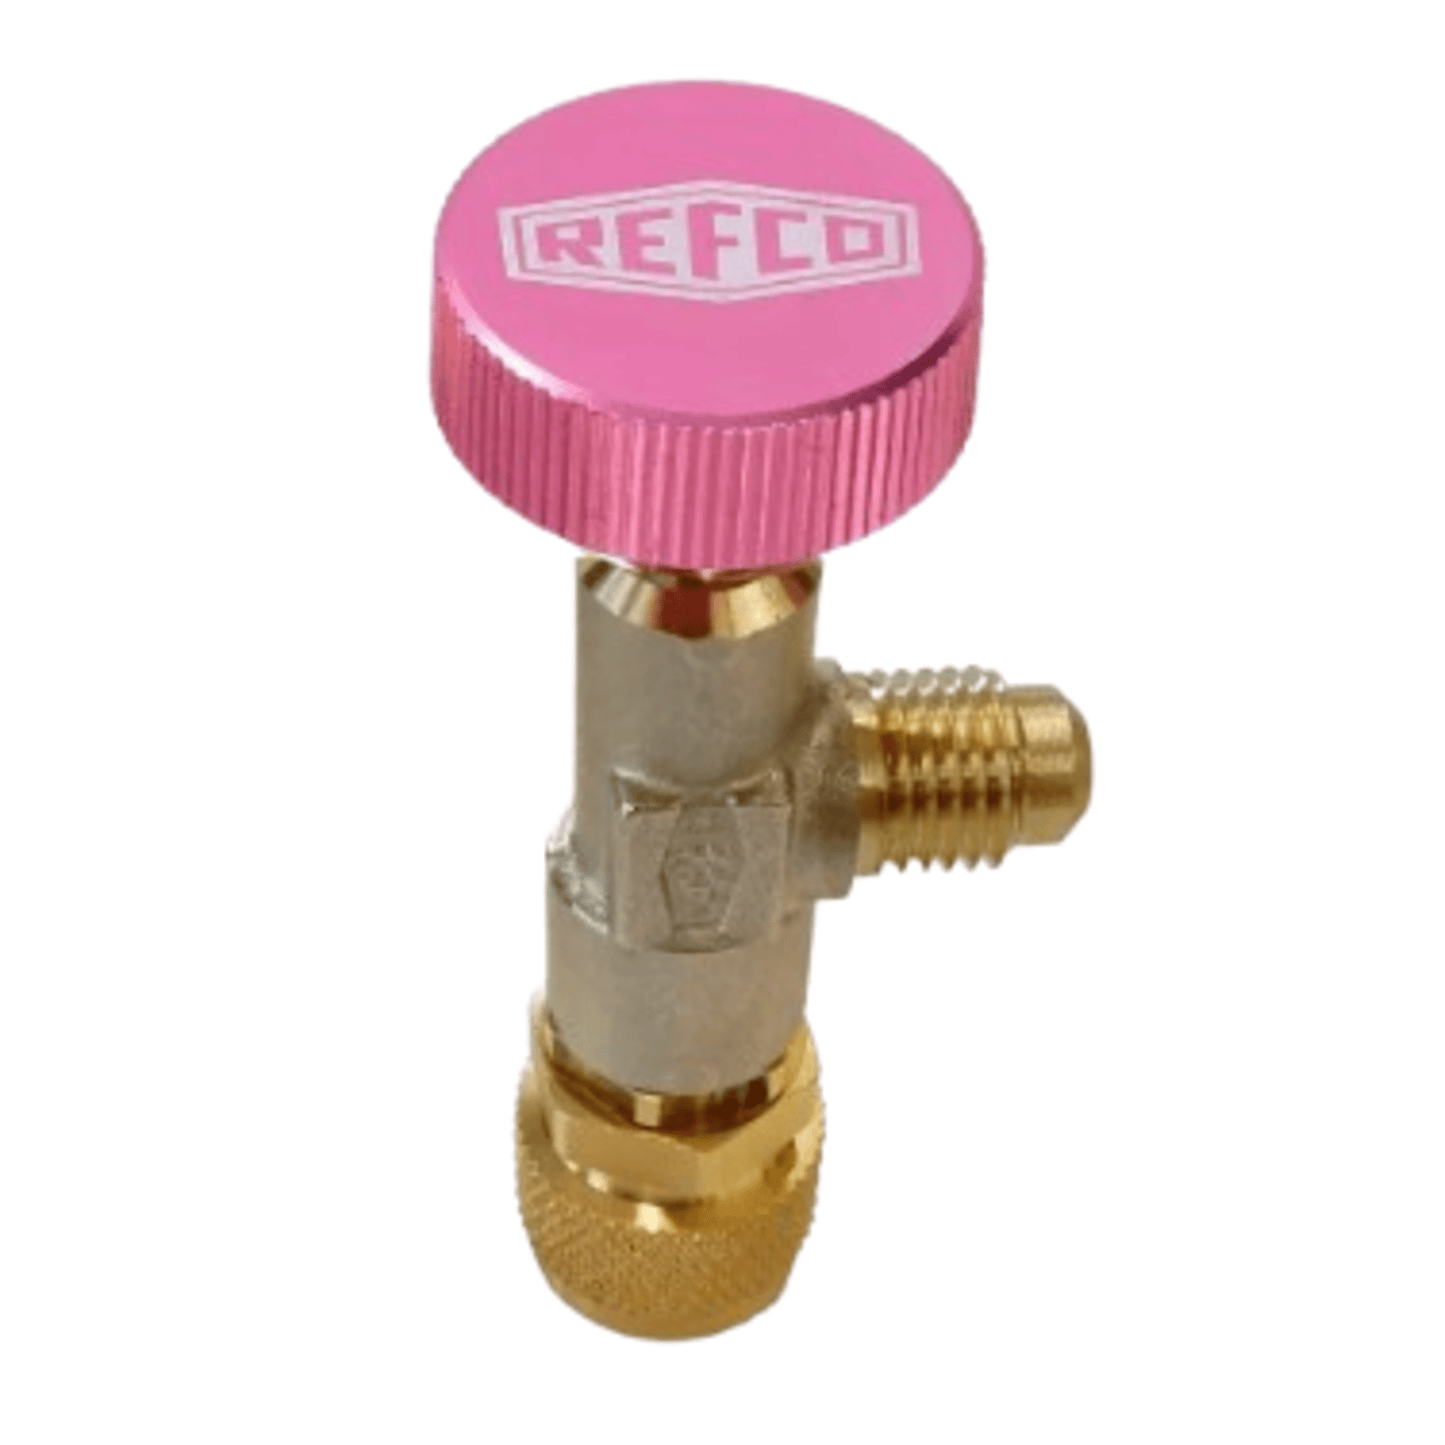 Refco 4687960, A-38410 Access control valve 1/4" SAE x 5/16" SAE